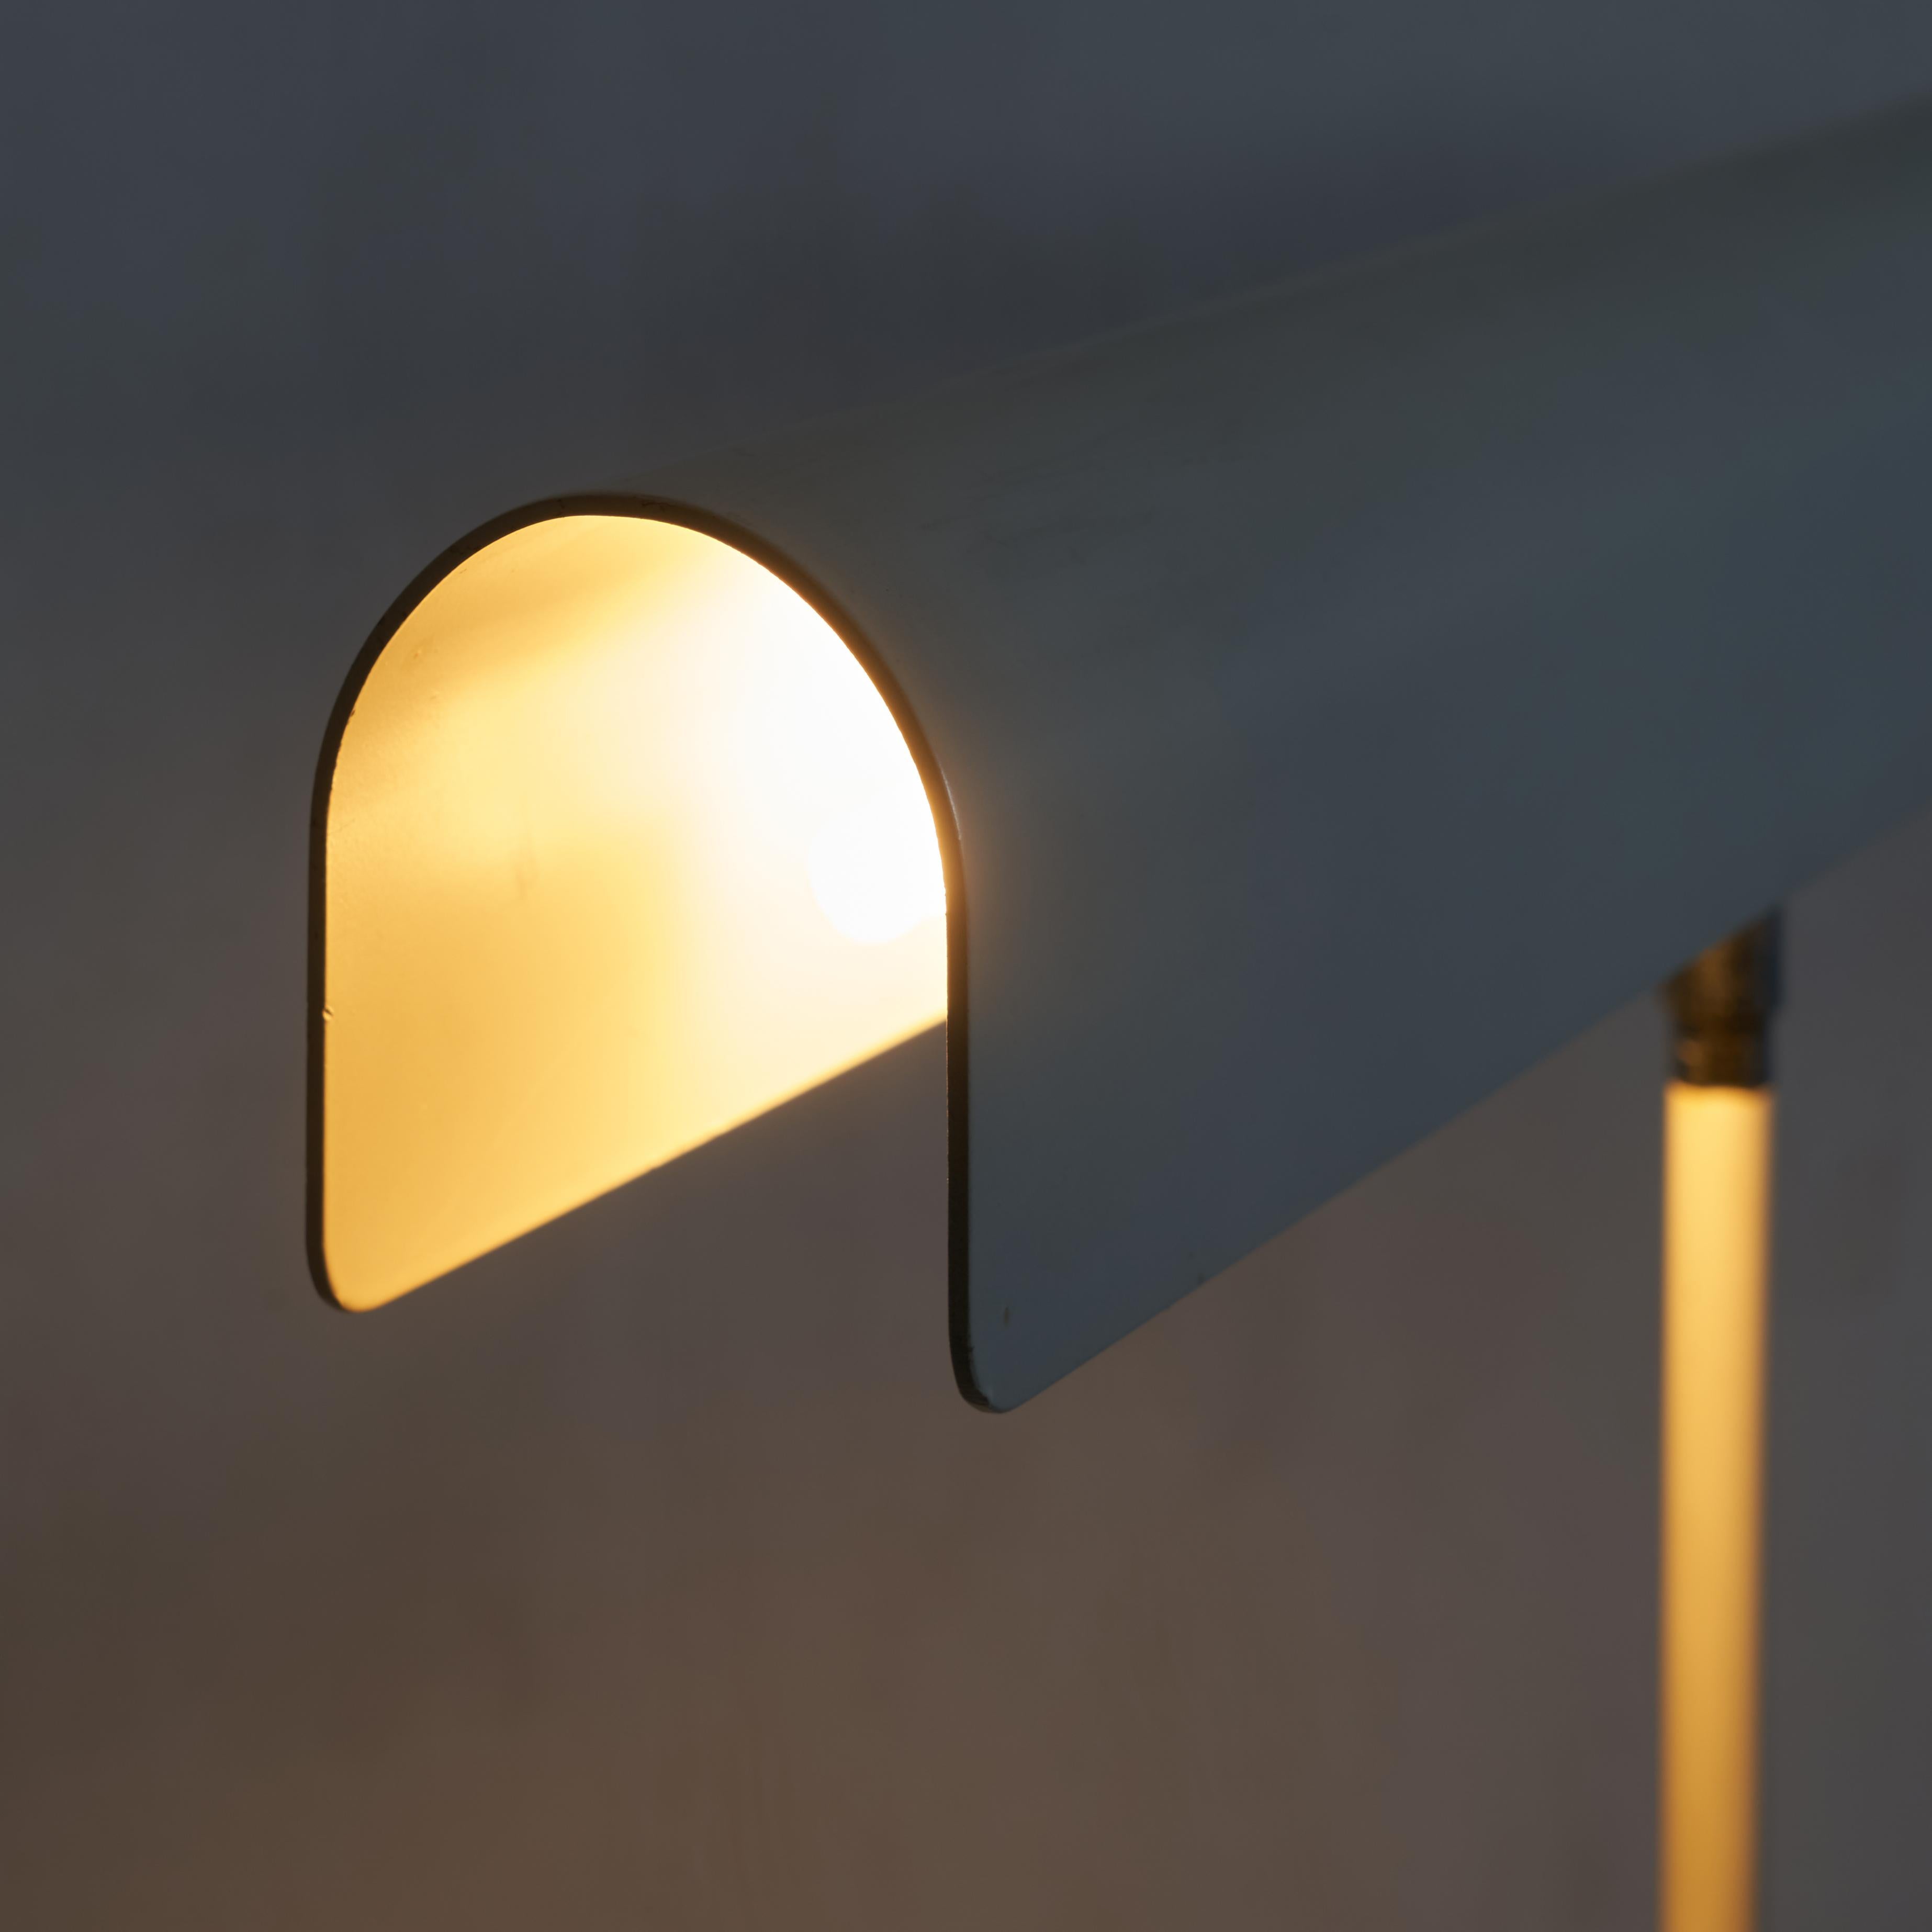 Floris Fiedeldij Unique Prototype Floor Lamp for Artimeta In Good Condition For Sale In Tilburg, NL